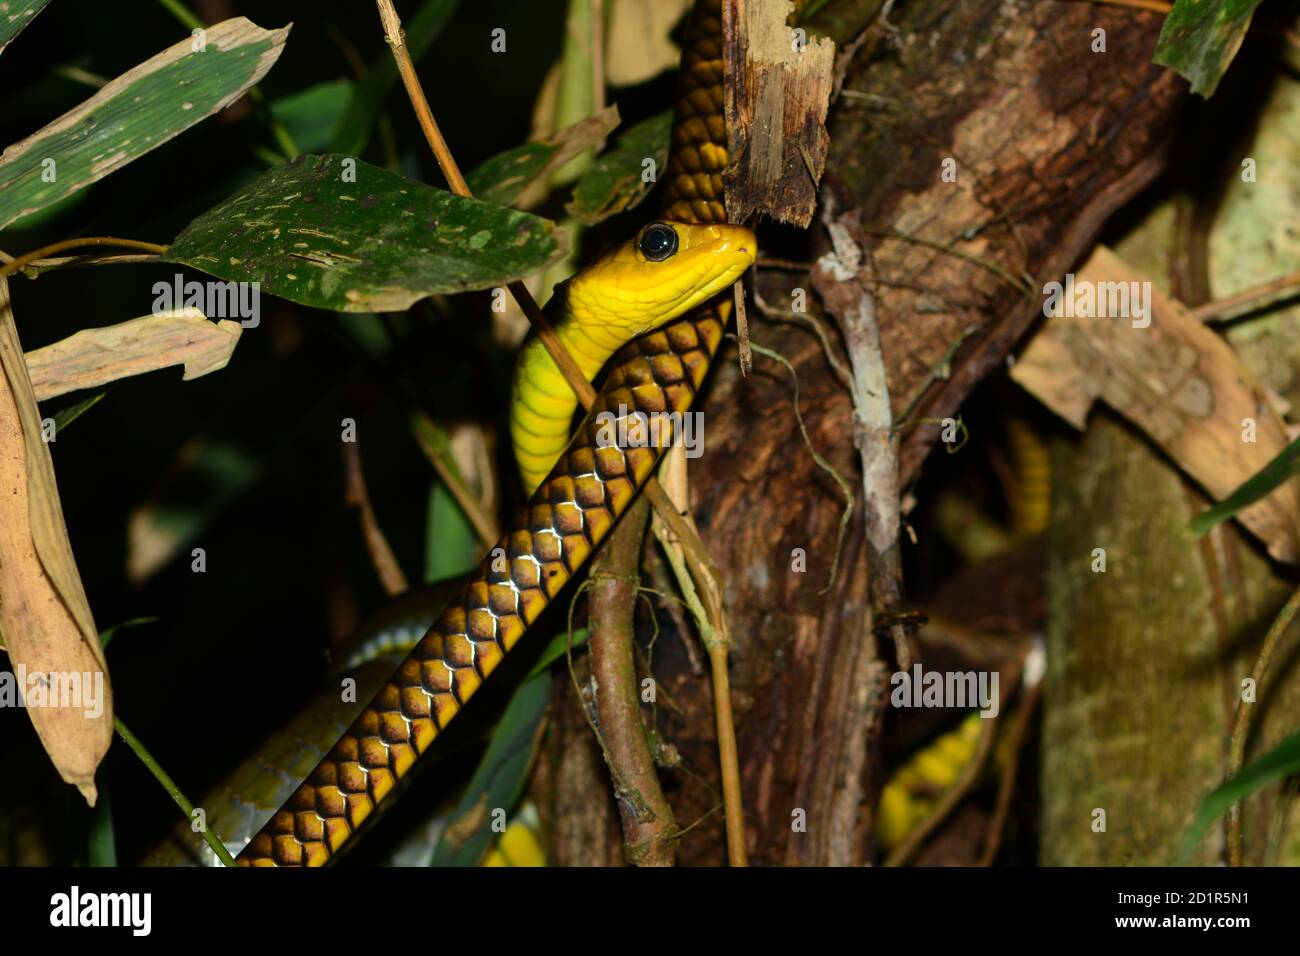 Nahaufnahme von Yellow-Flecked Sipo (Chironius flavopictus). Amazonasperu, Südamerika Stockfoto